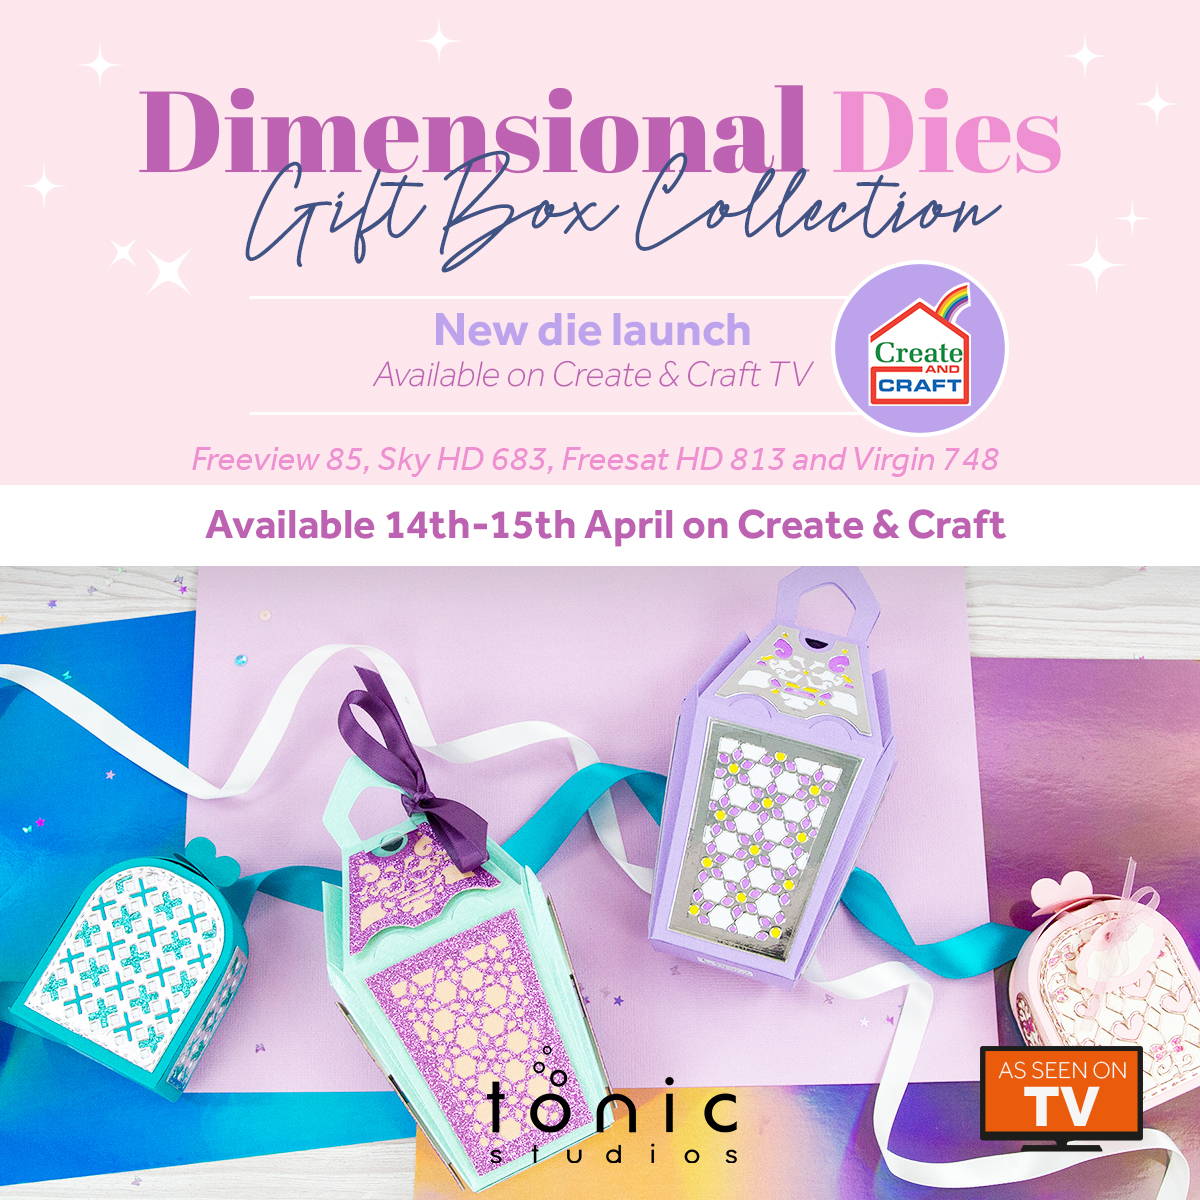 Domed Card & Gift Box Collection, tilgængelig som en eksklusiv die-lancering på Create and Craft TV. fra den 14. februar 2022.